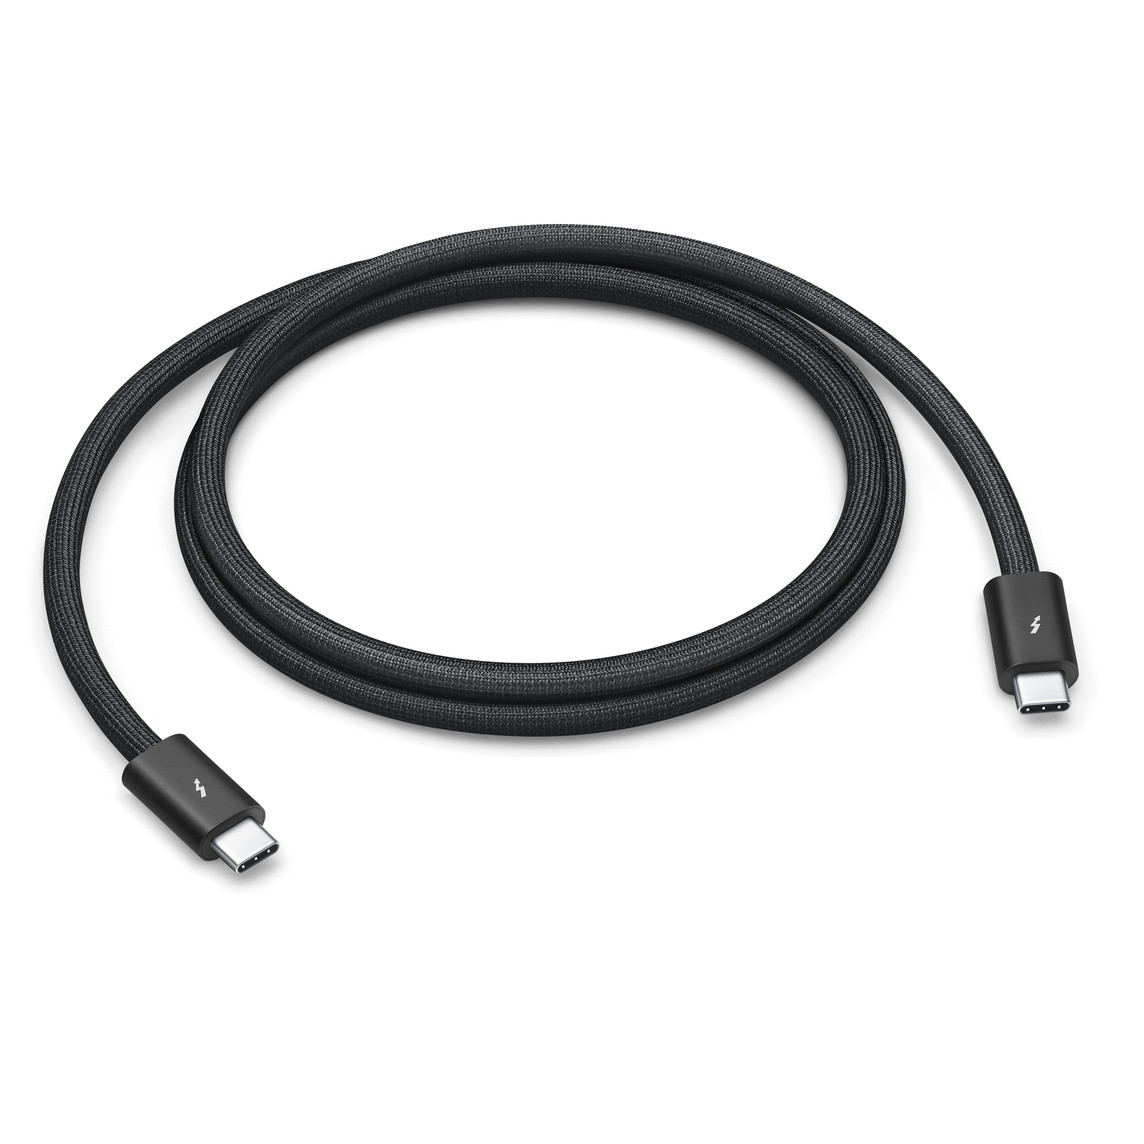 Con un diseño trenzado en negro que se enrolla sin enredarse, este cable Thunderbolt 4 Pro de 1 metro ofrece transferencias de datos de hasta 40 Gb/s.